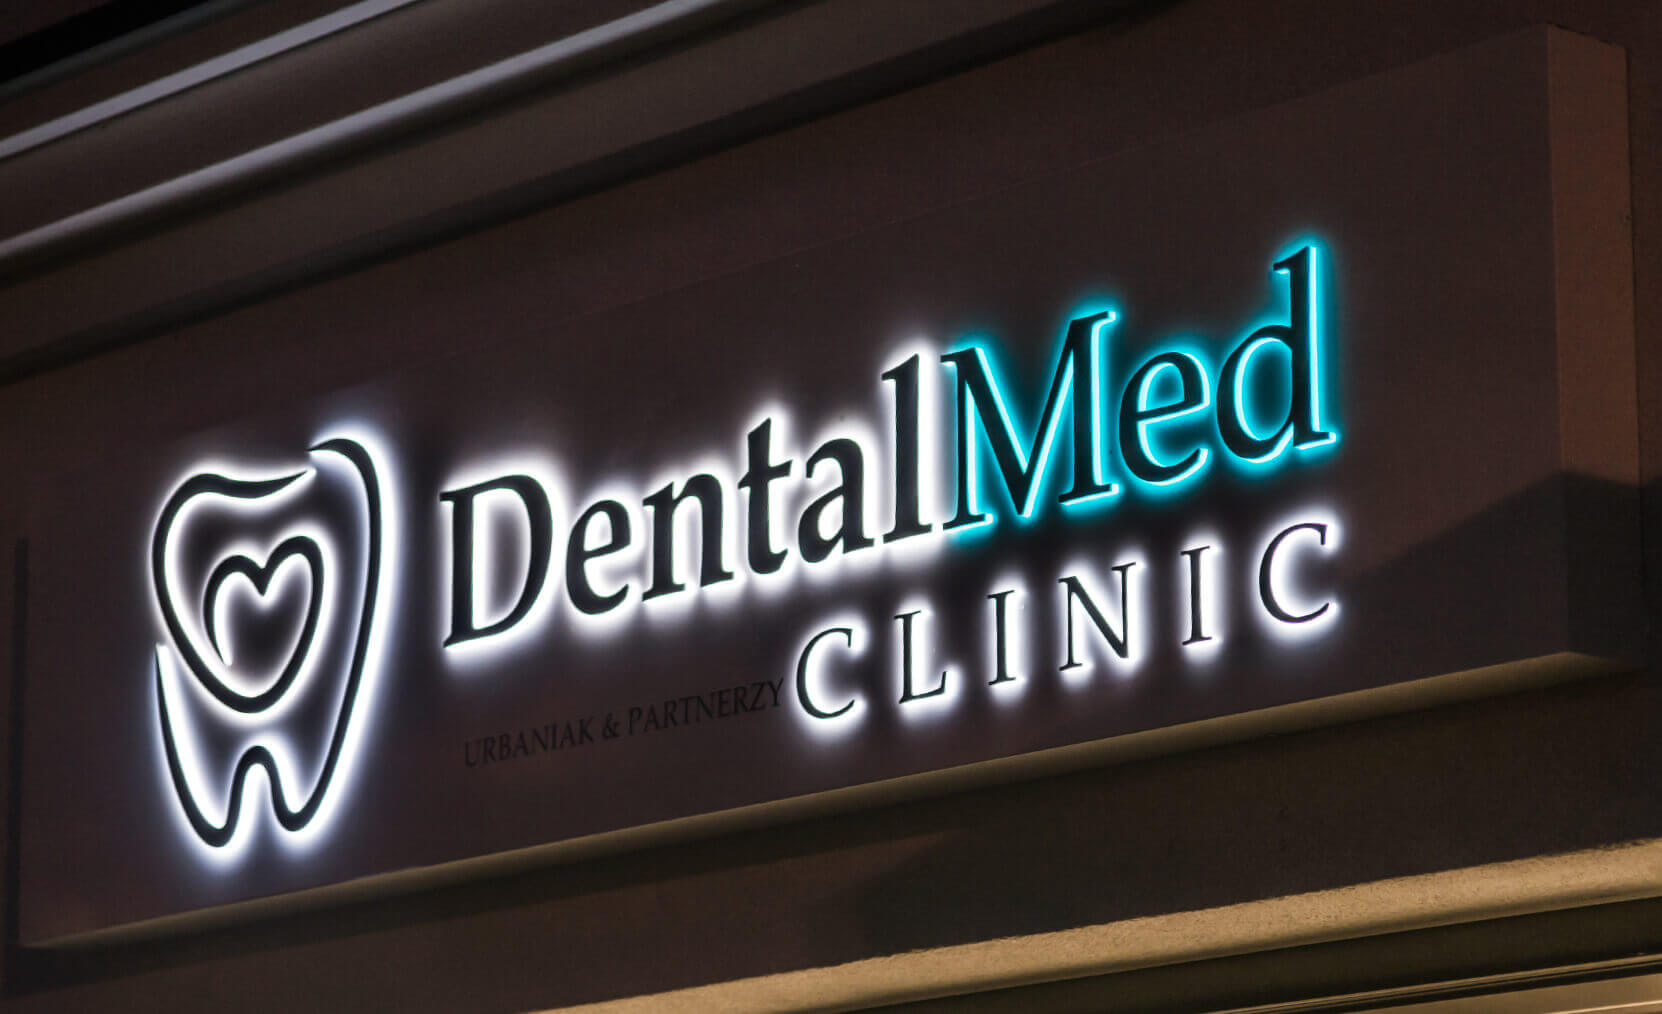 DentalMed - DentalMed - Lettres spatiales sur le coffret publicitaire au-dessus de l'entrée